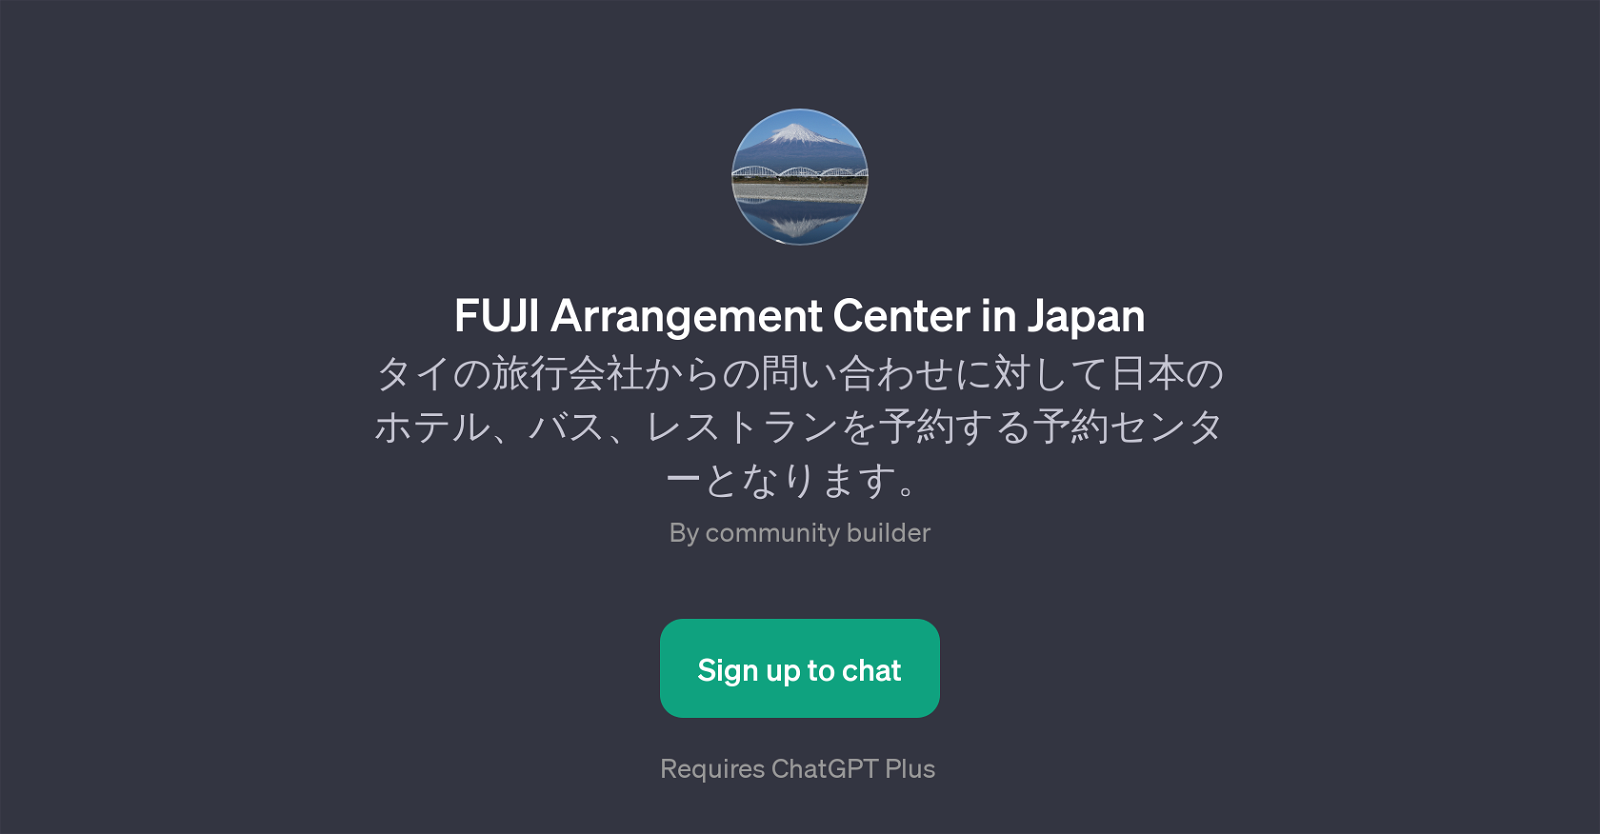 FUJI Arrangement Center in Japan website